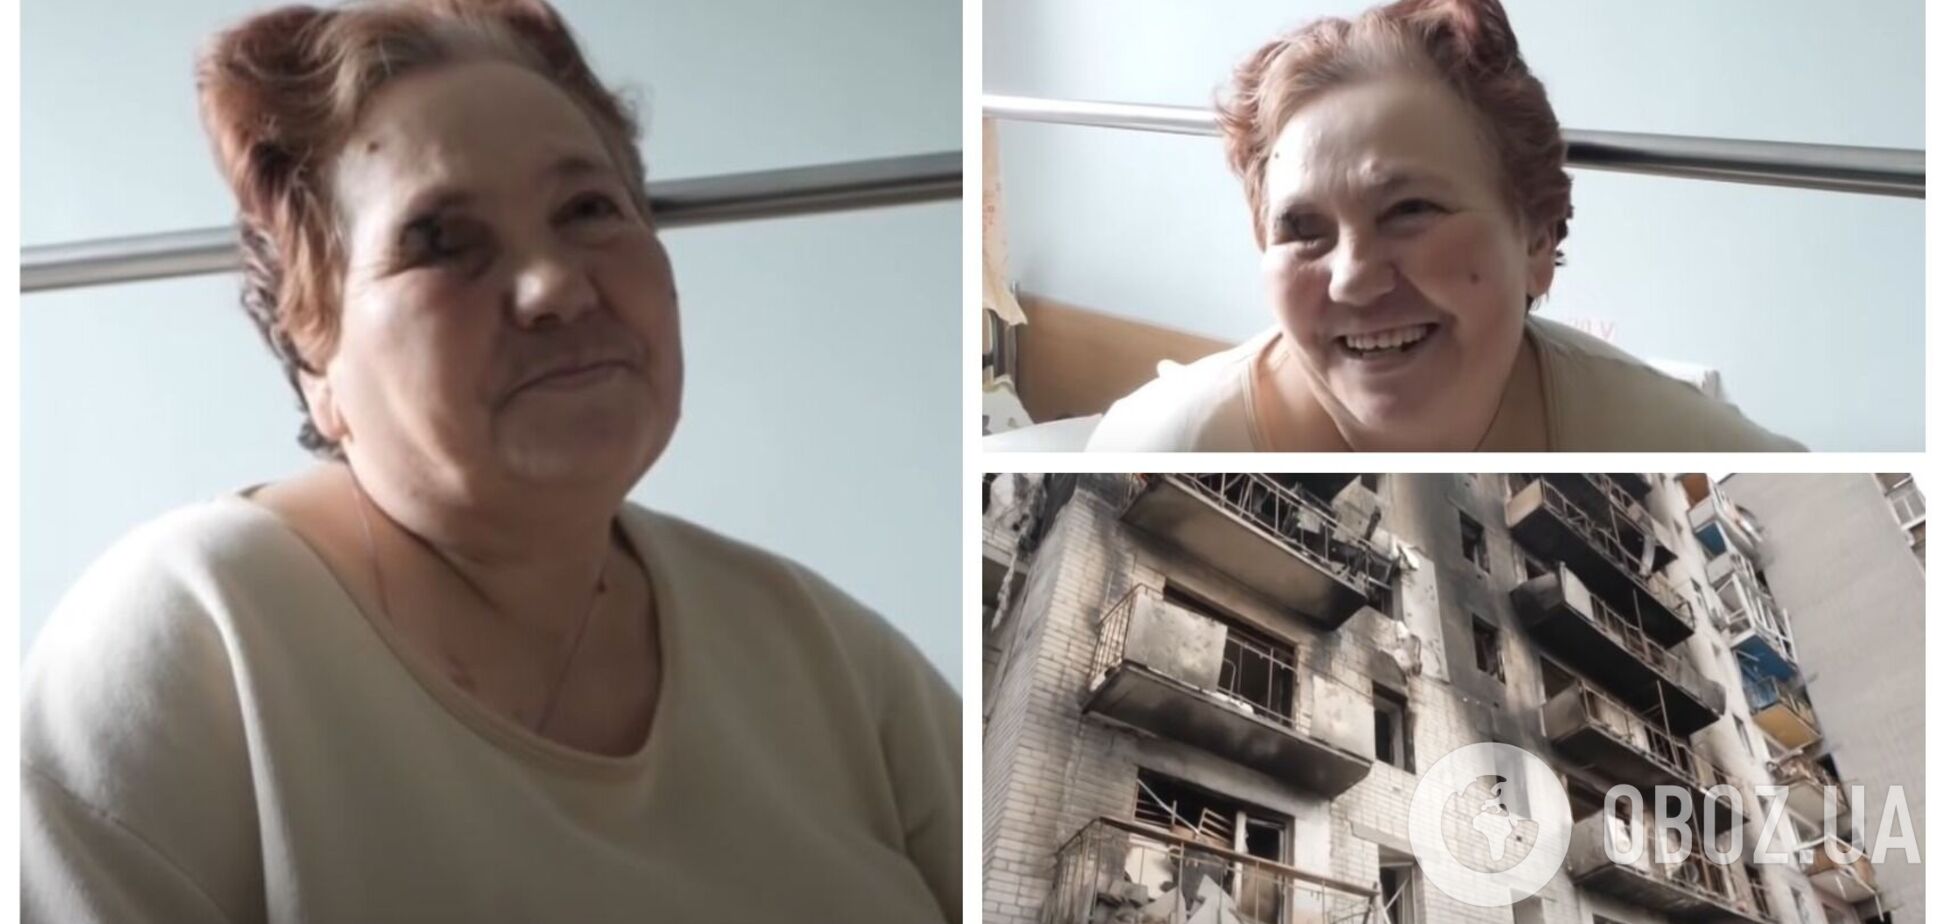 Пенсионерка из Чернигова в результате атаки оккупантов потеряла ногу и глаз, но не боевой дух. Фото и видео